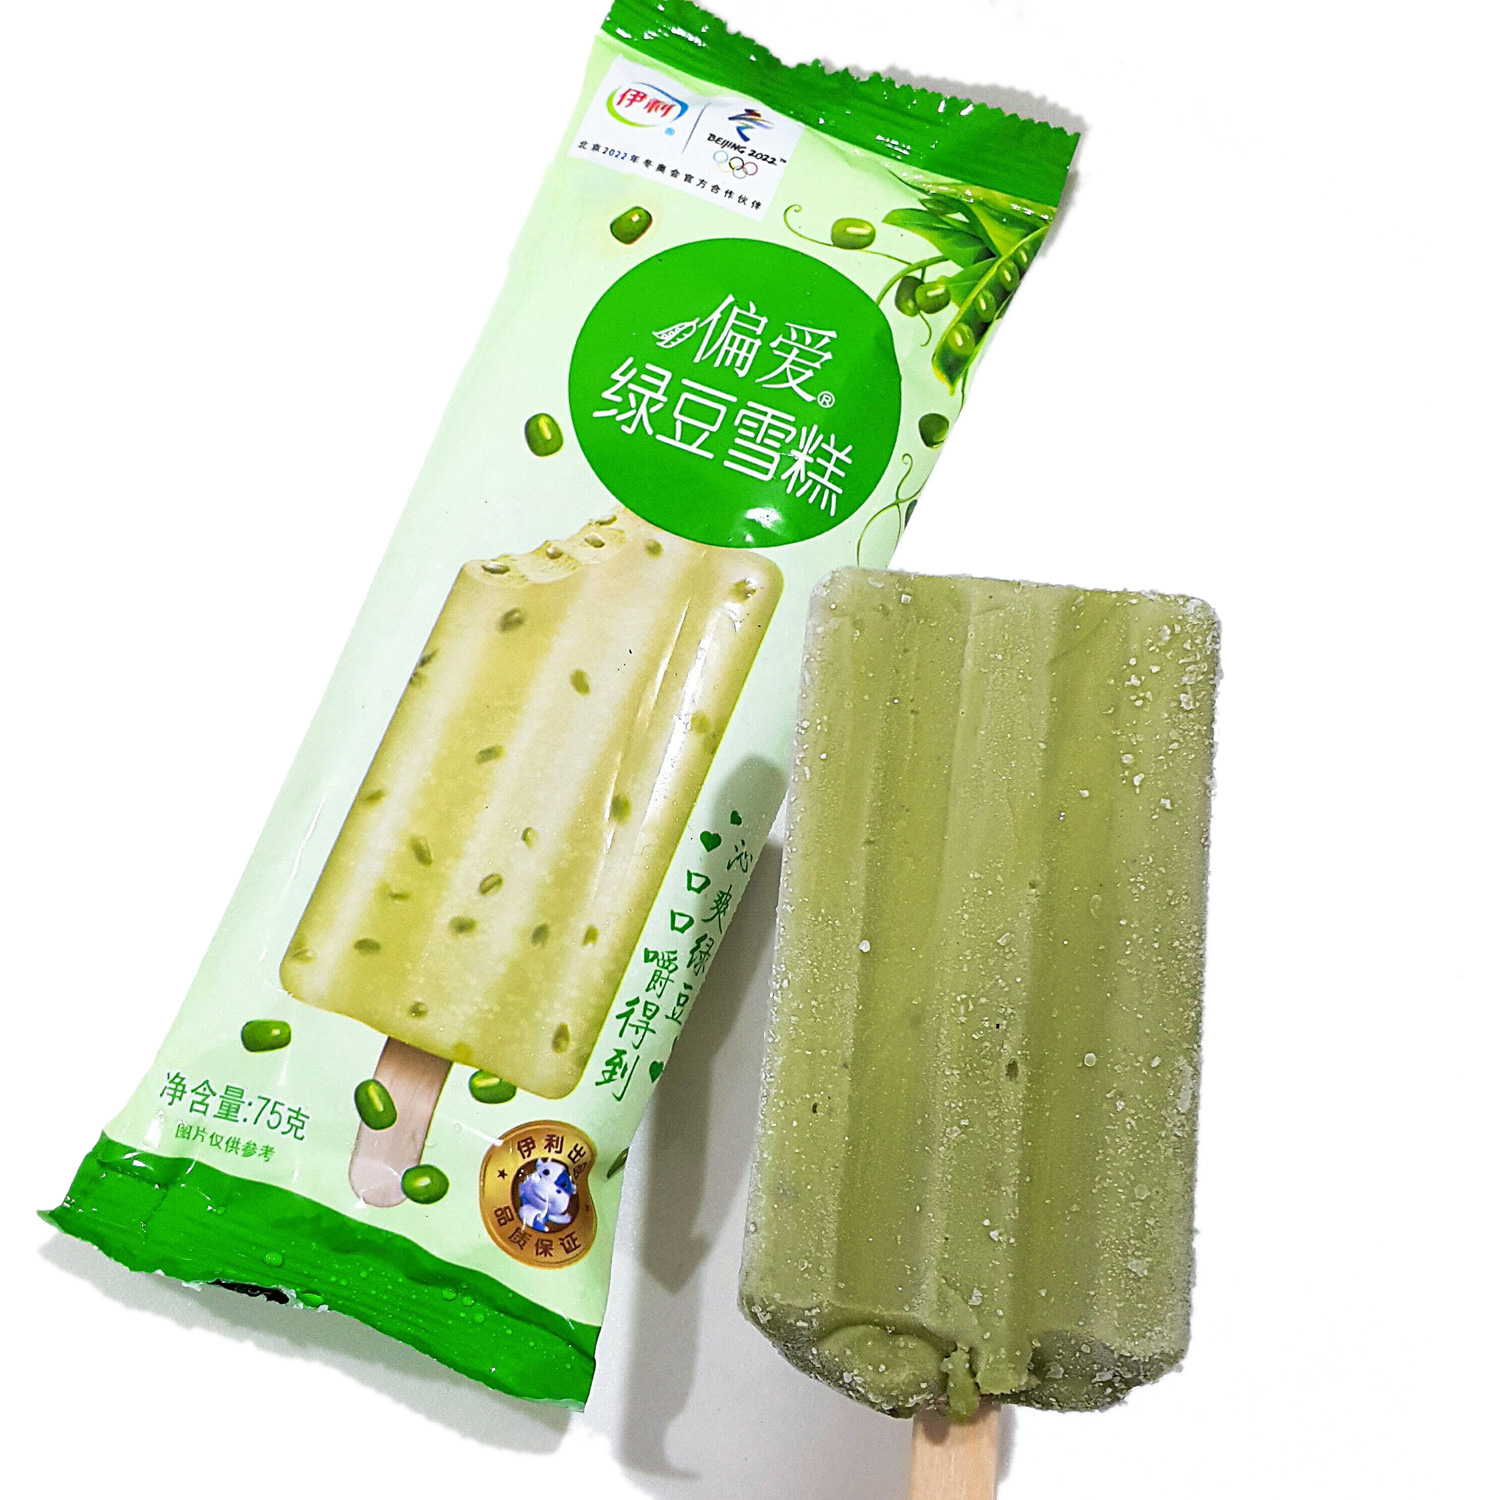 吃冰啦！！！夏天一定会吃的绿豆冰淇淋，清凉解暑神器哟！ - 哔哩哔哩